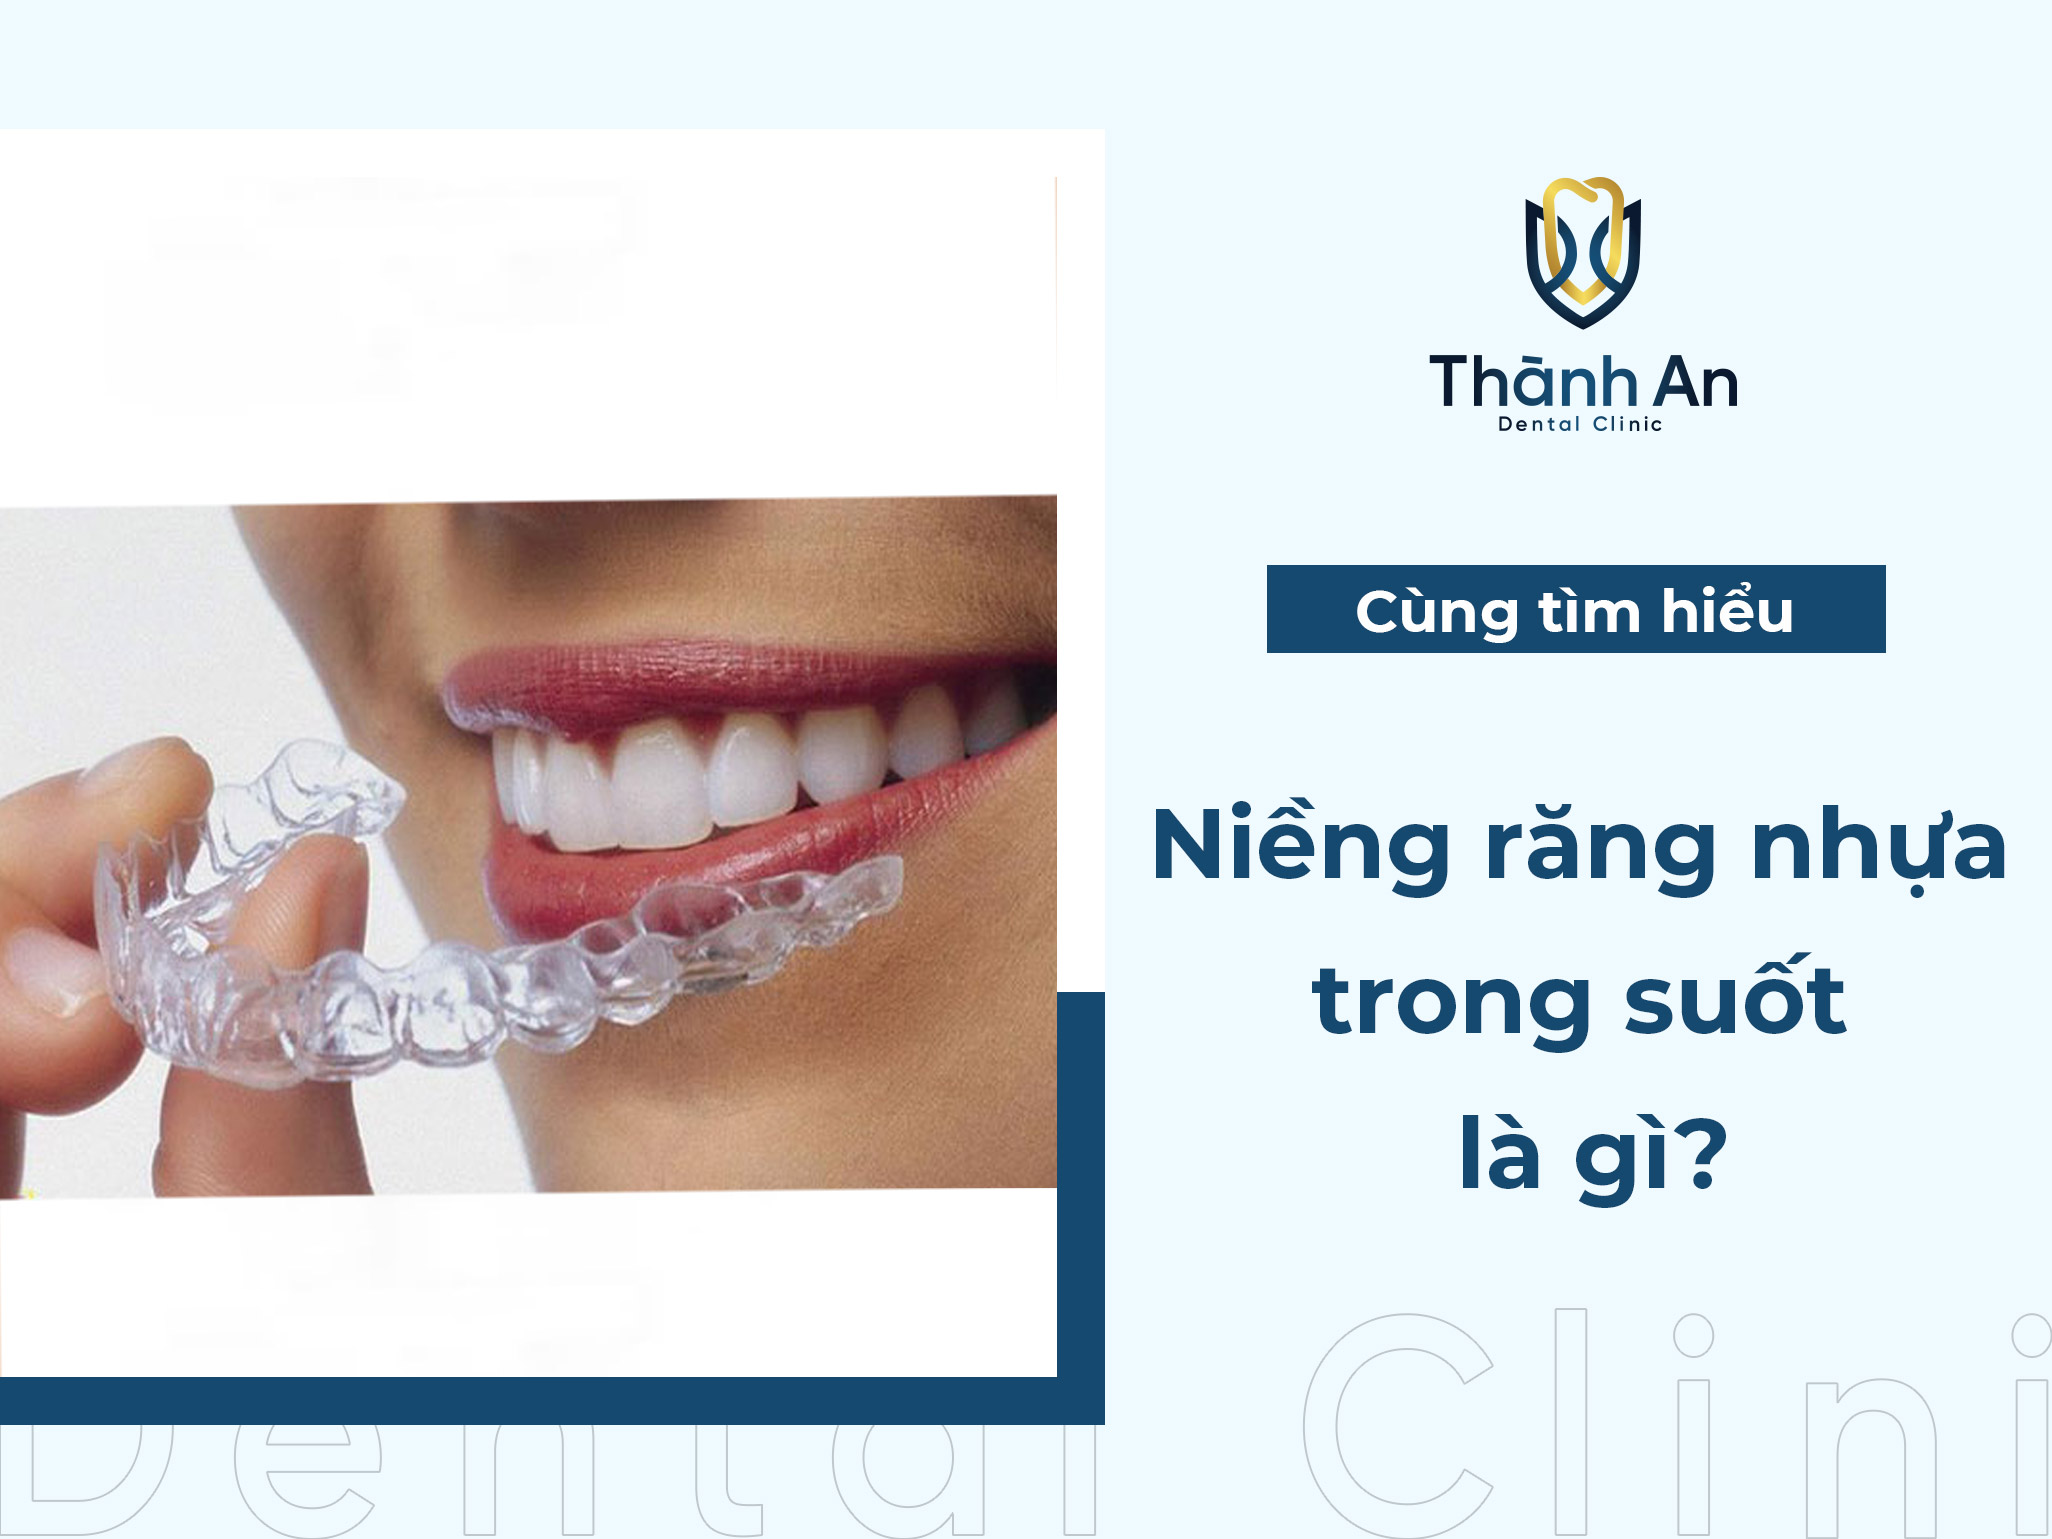 Niềng răng nhựa trong suốt là gì? Có mấy loại để lựa chọn